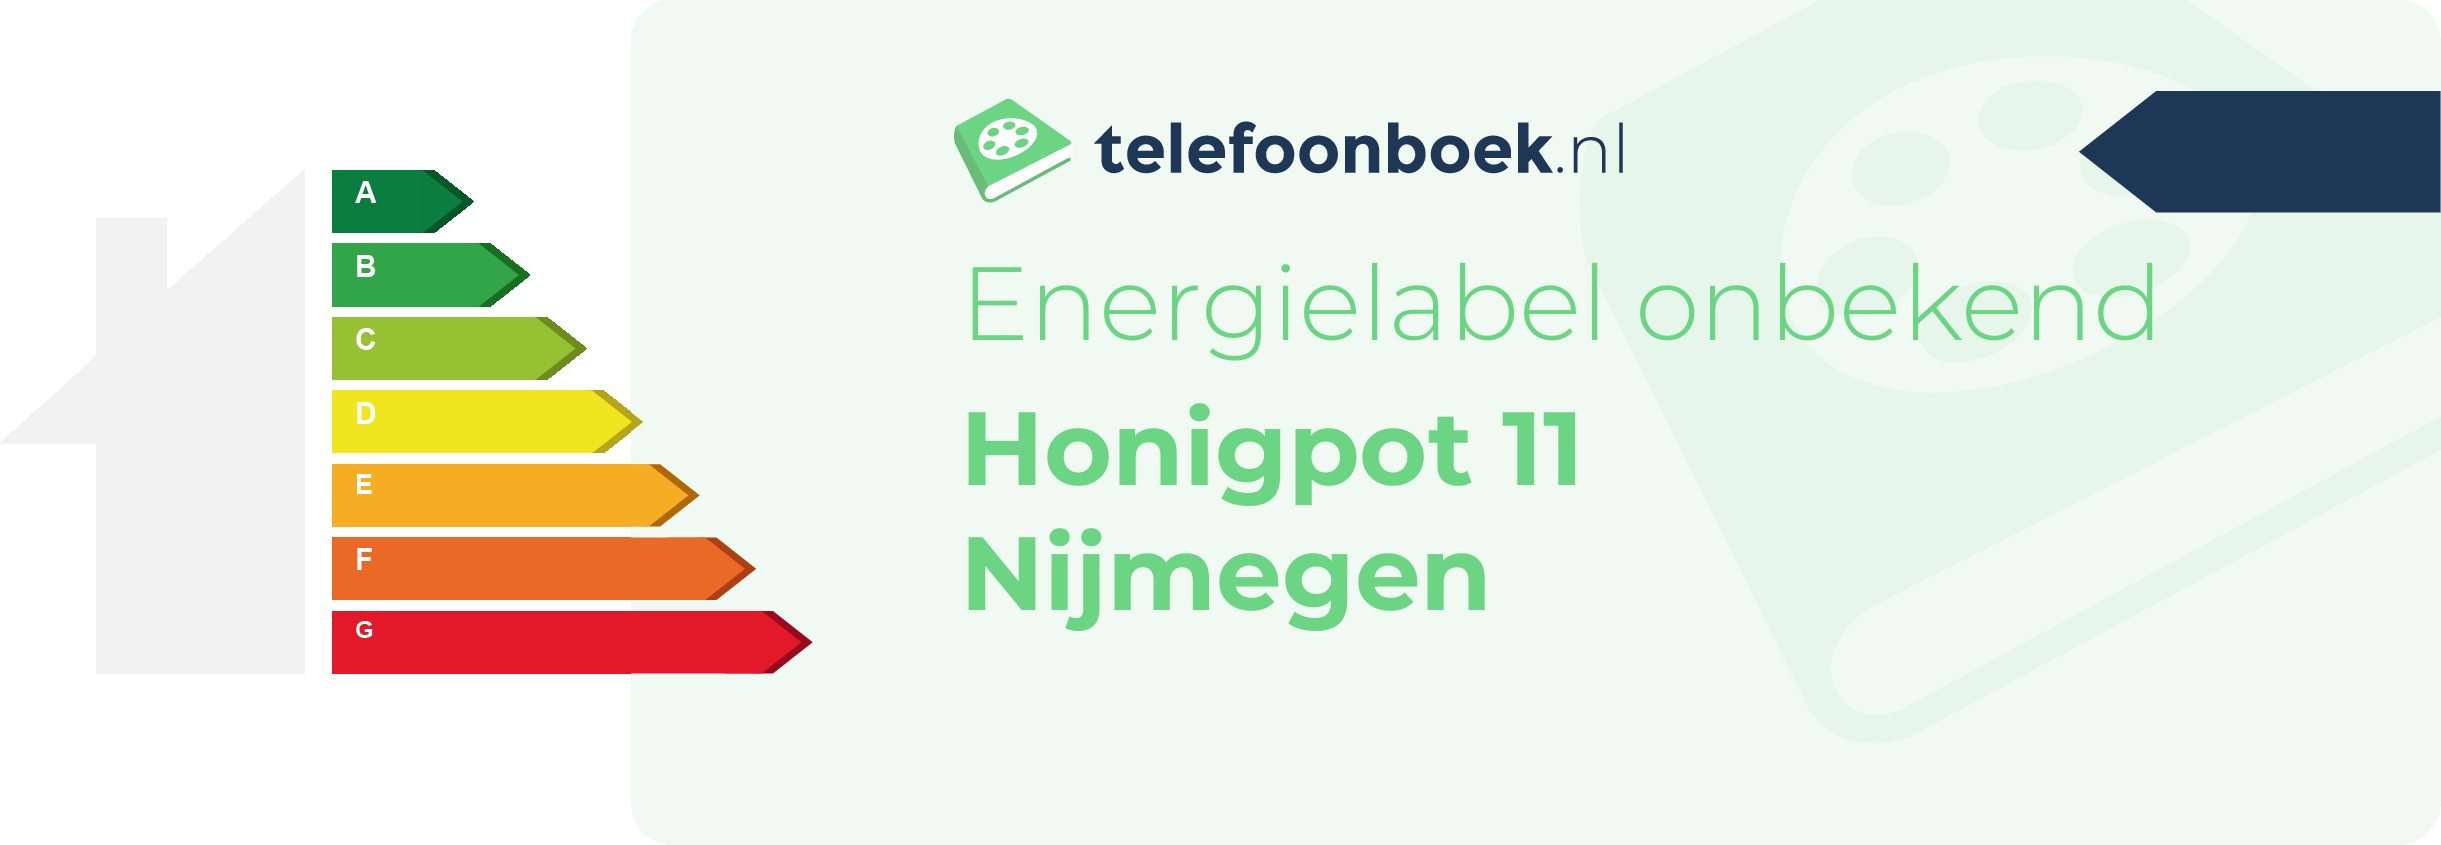 Energielabel Honigpot 11 Nijmegen